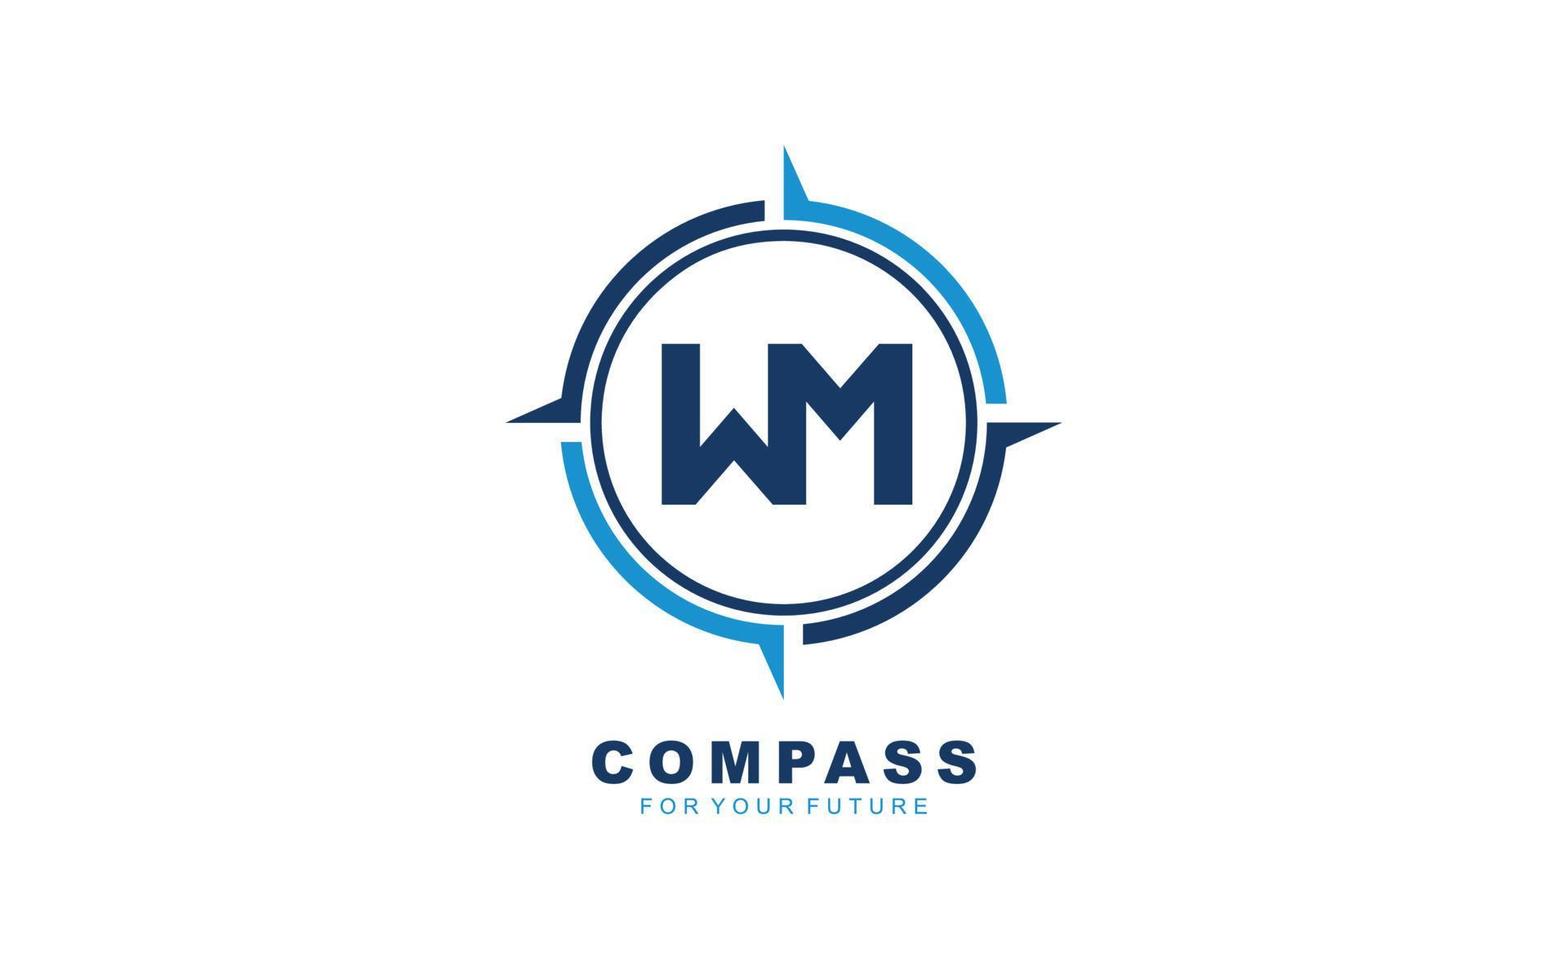 wm logo navigatie voor branding bedrijf. kompas sjabloon vector illustratie voor uw merk.